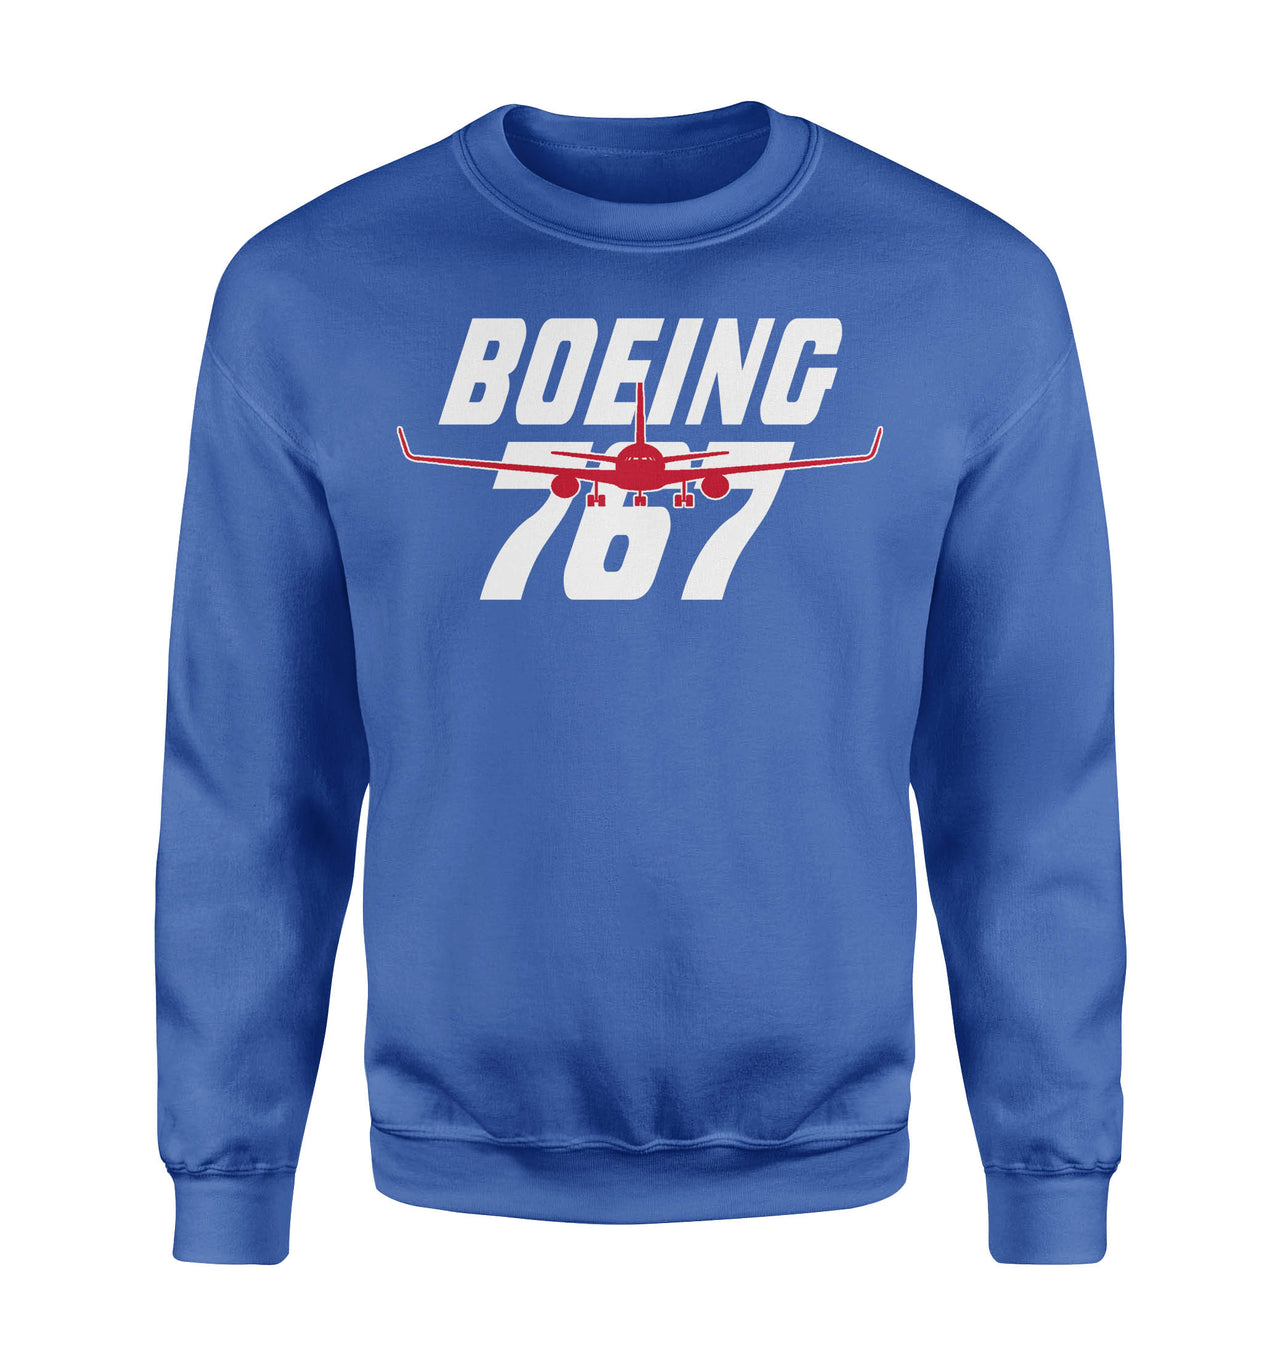 Amazing Boeing 767 Designed Sweatshirts